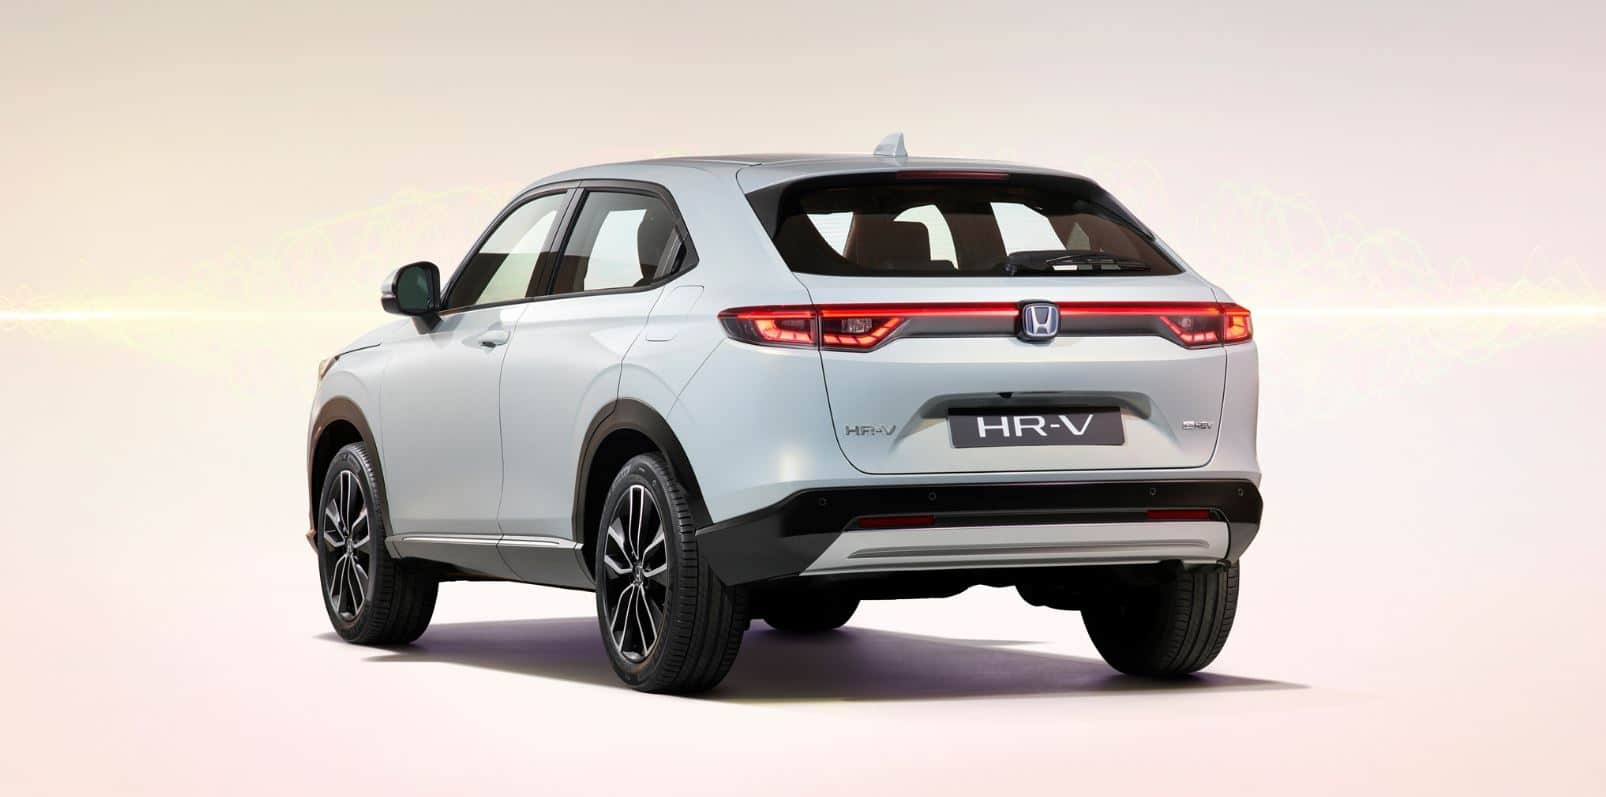 Precios del Honda HR-V SUV nuevo en oferta para todos sus motores y acabados